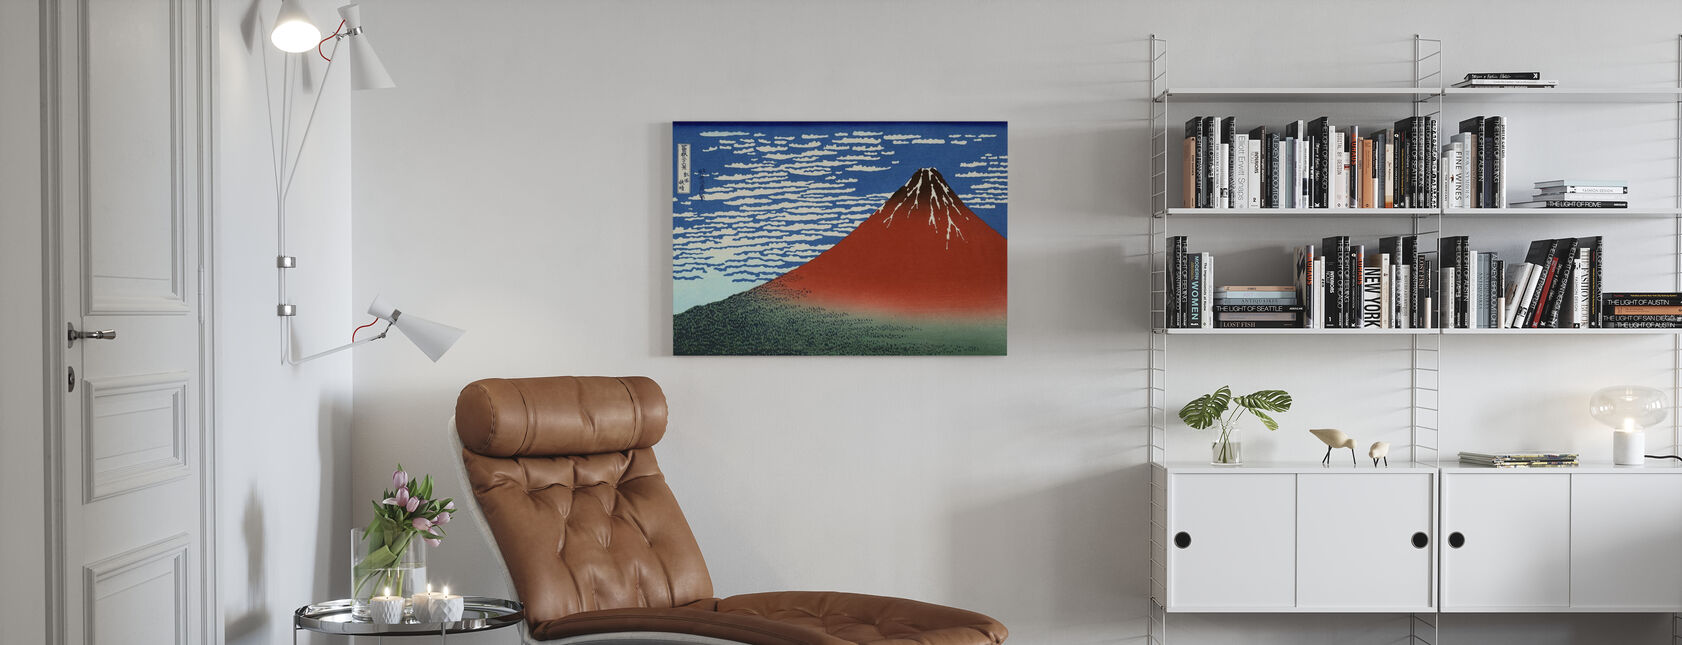 Red Fuji, Katsushika Hokusai - Canvas print - Living Room